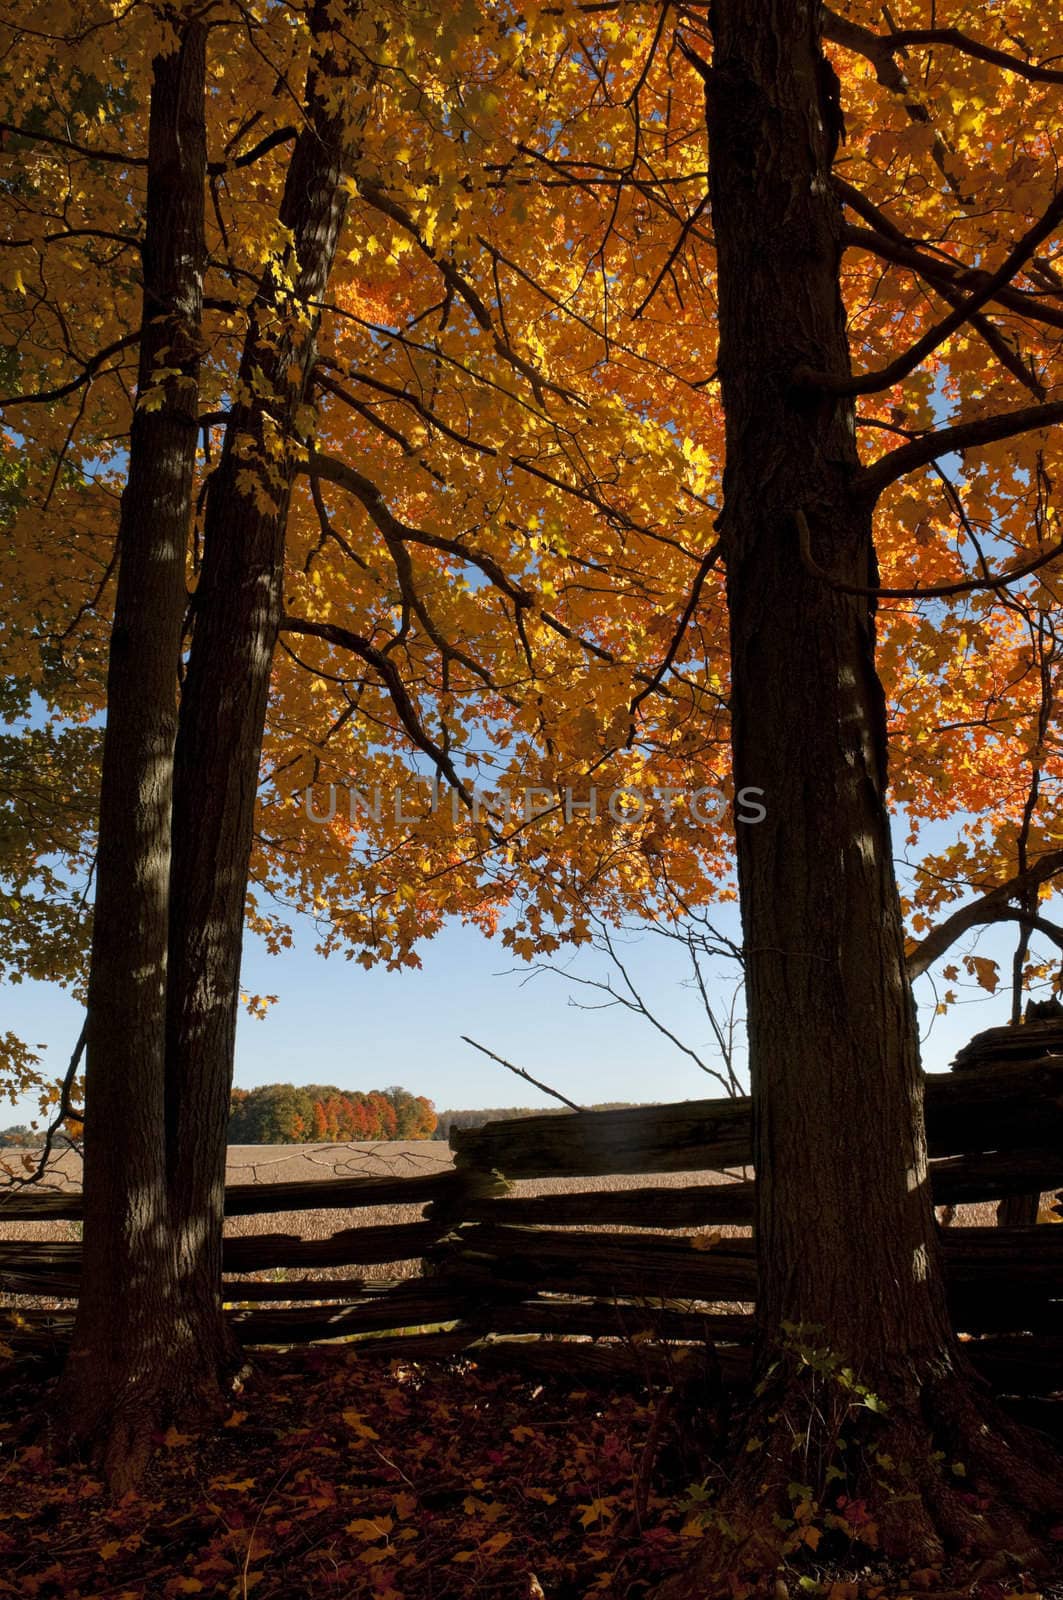 Autumn Maple Trees by Gordo25